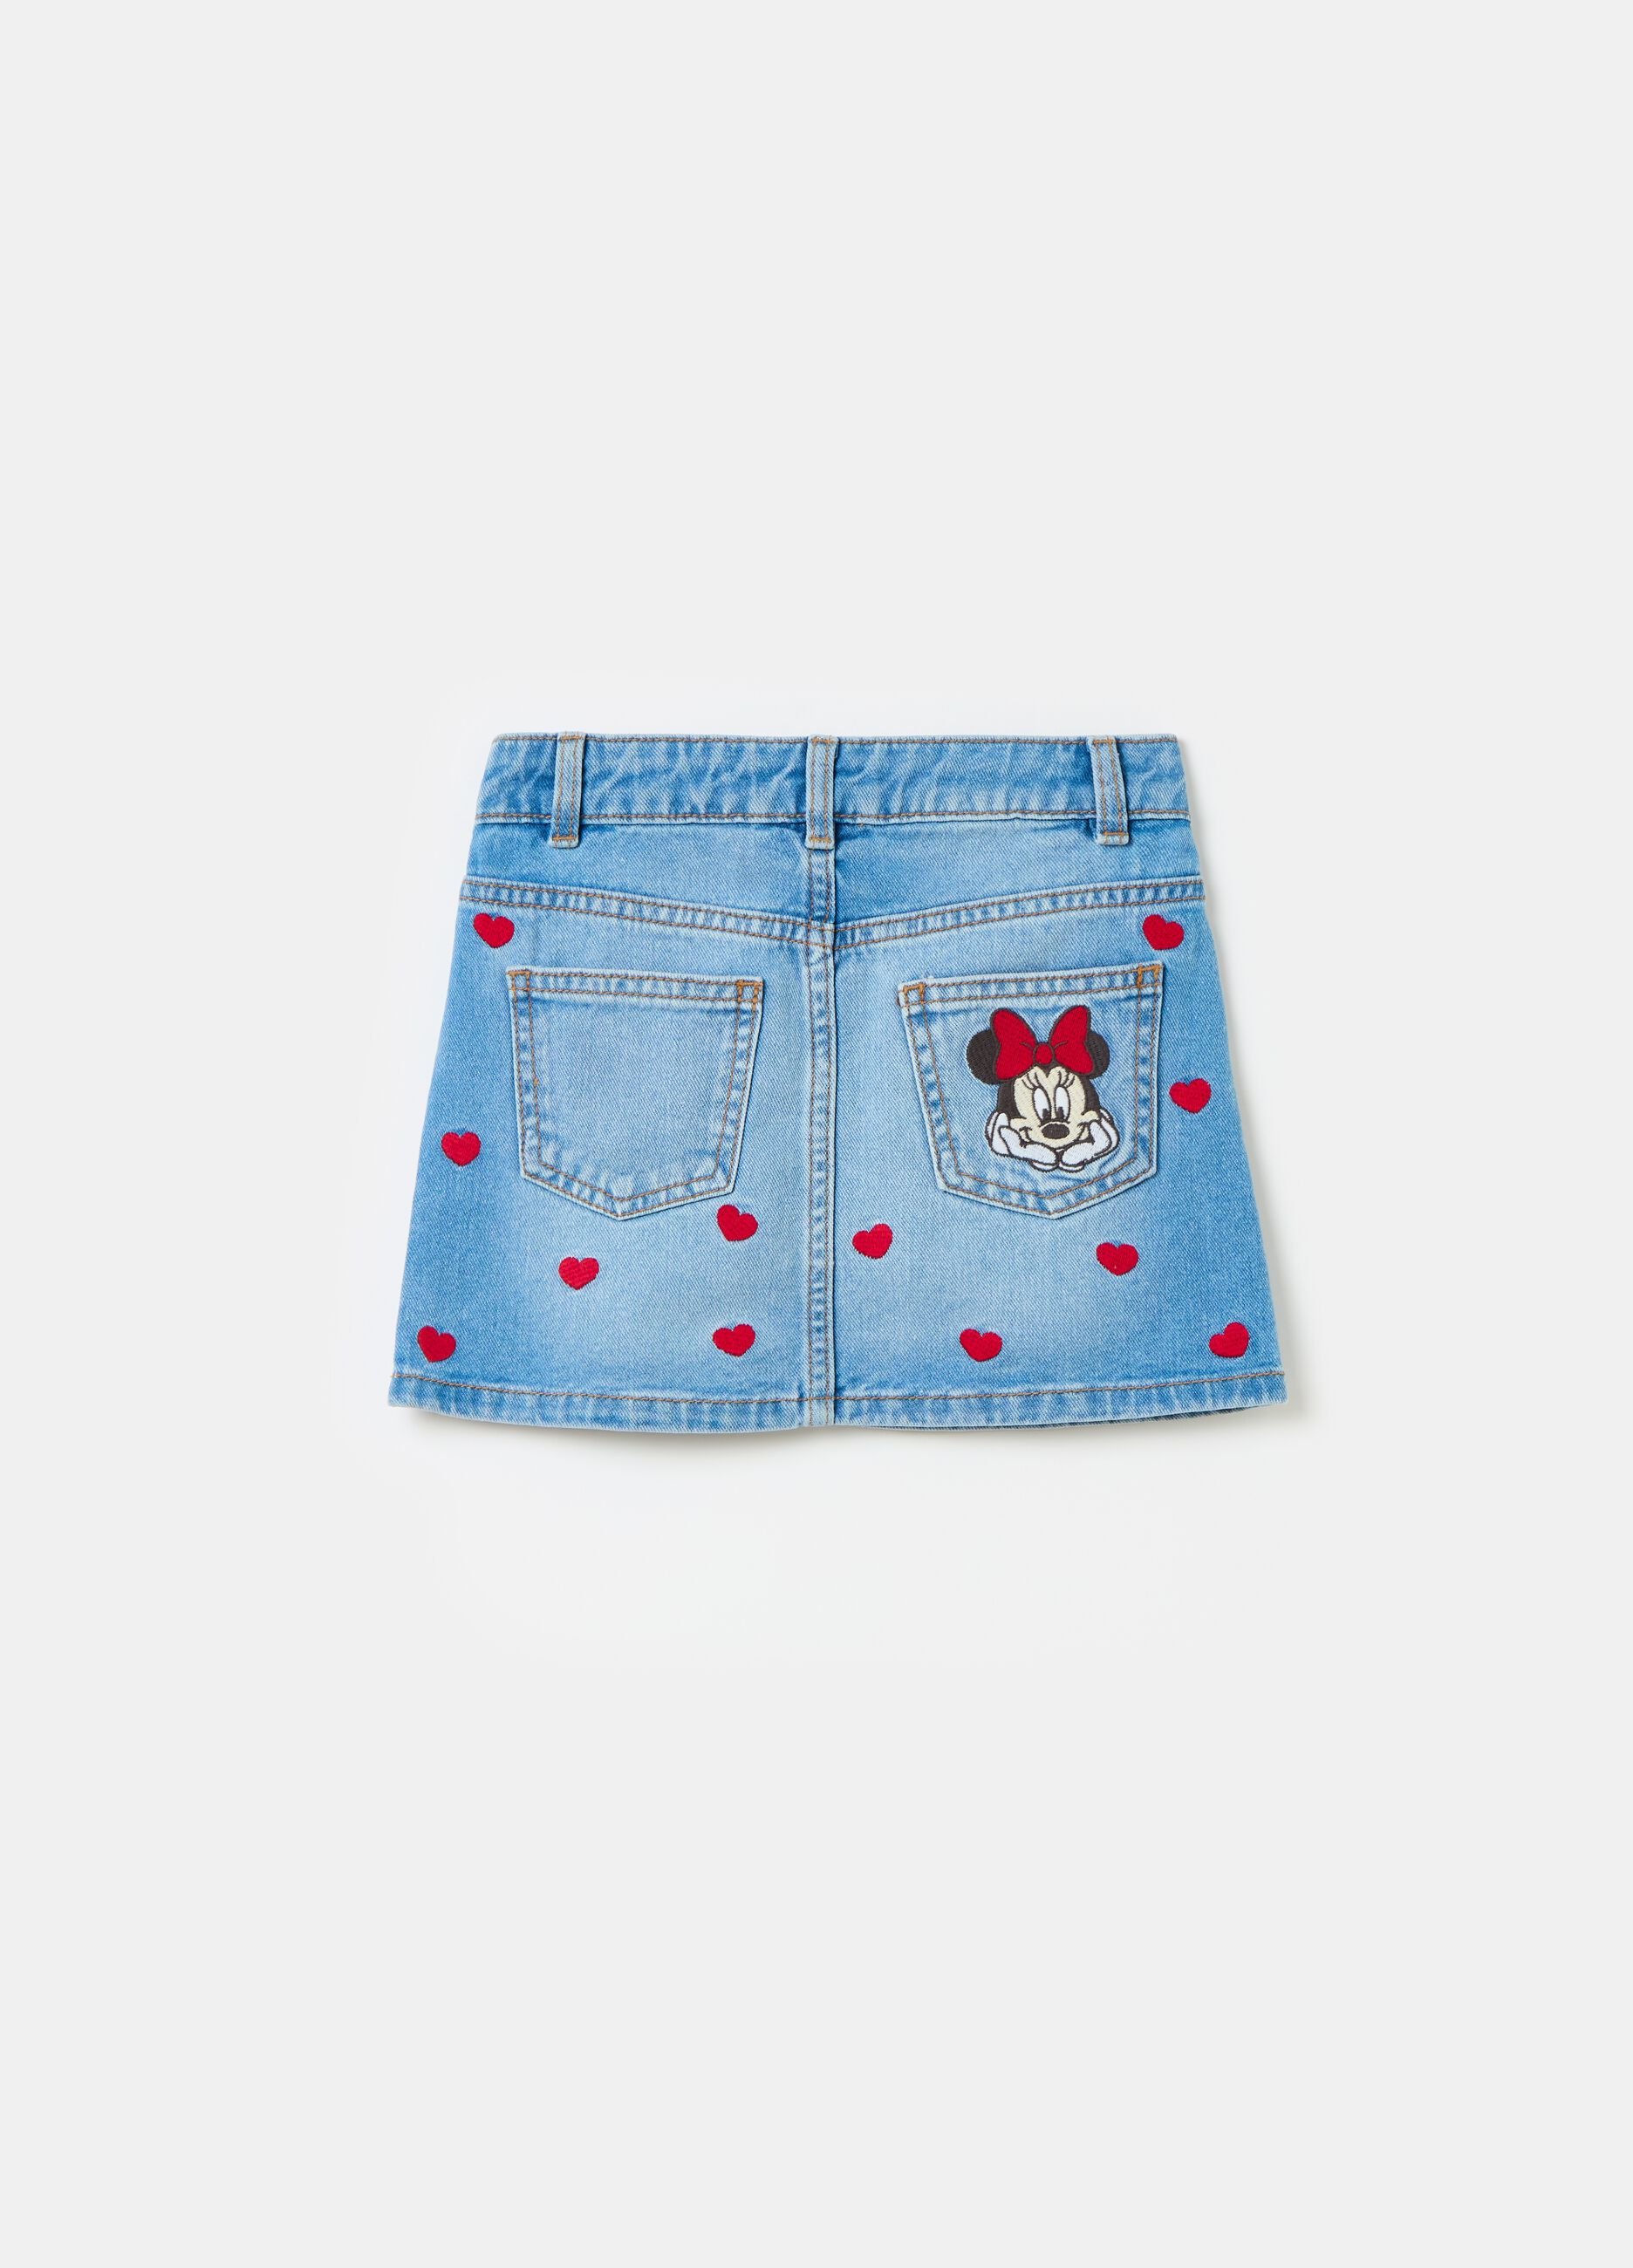 Minifalda de denim bordado Minnie y corazones